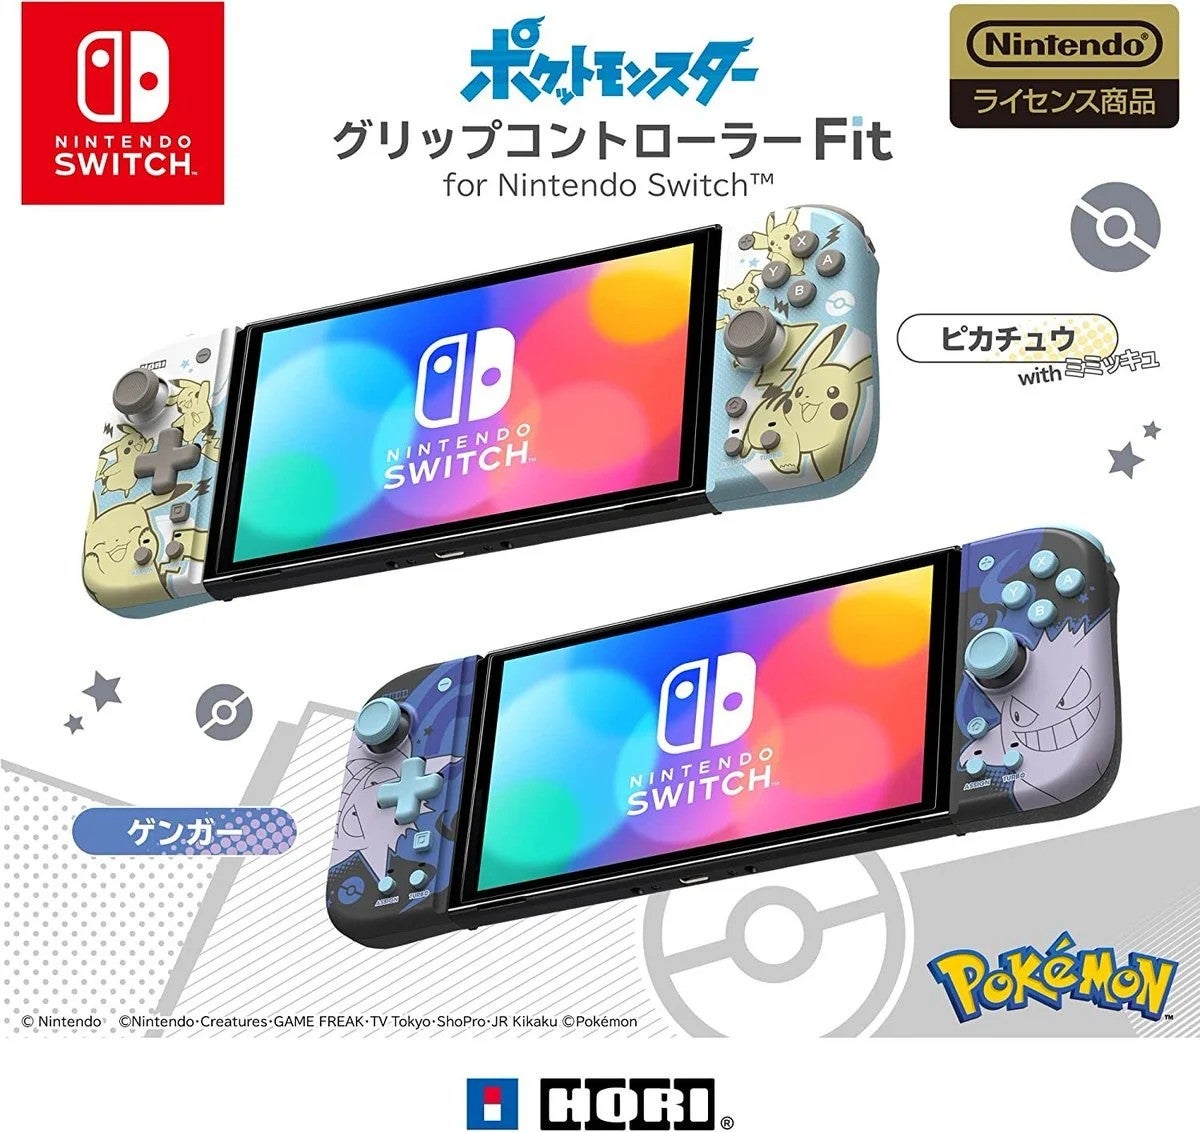 Die neuen Pokémon-Varianten des Split Pad Compact von Hori.